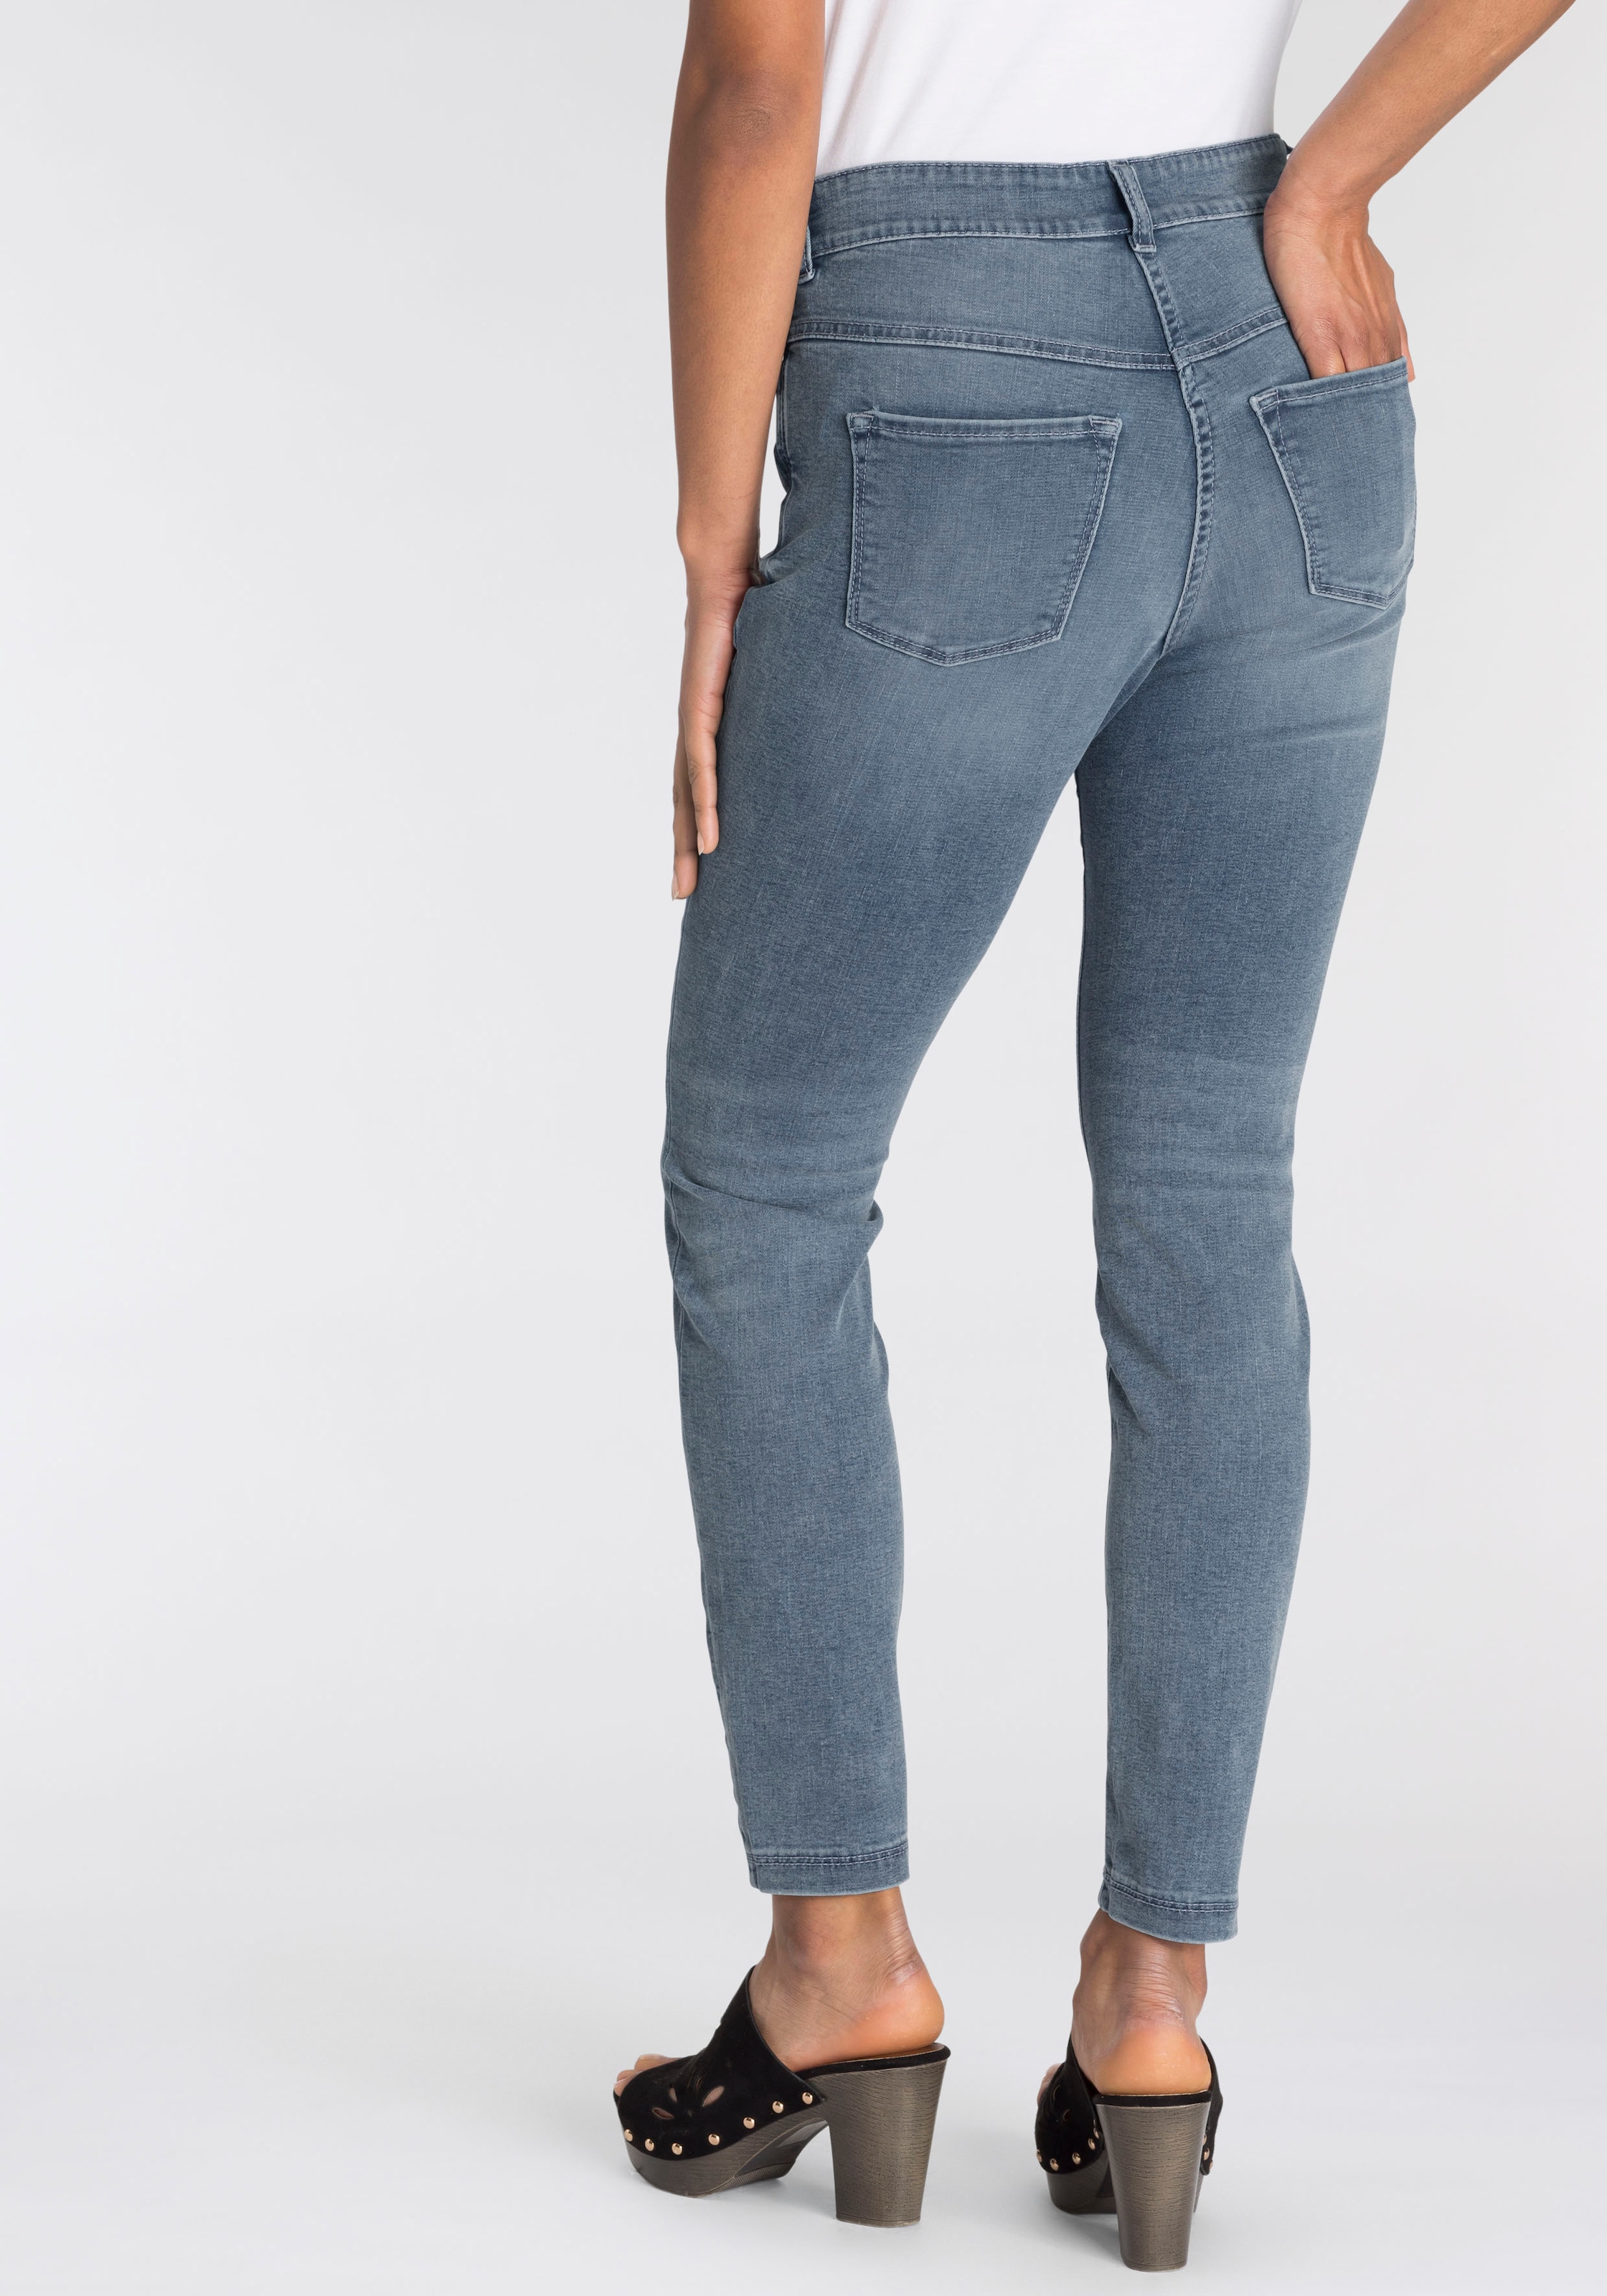 MAC Skinny-fit-Jeans »Hiperstretch-Skinny«, Power-Stretch Qualität sitzt  den ganzen Tag bequem bei OTTOversand